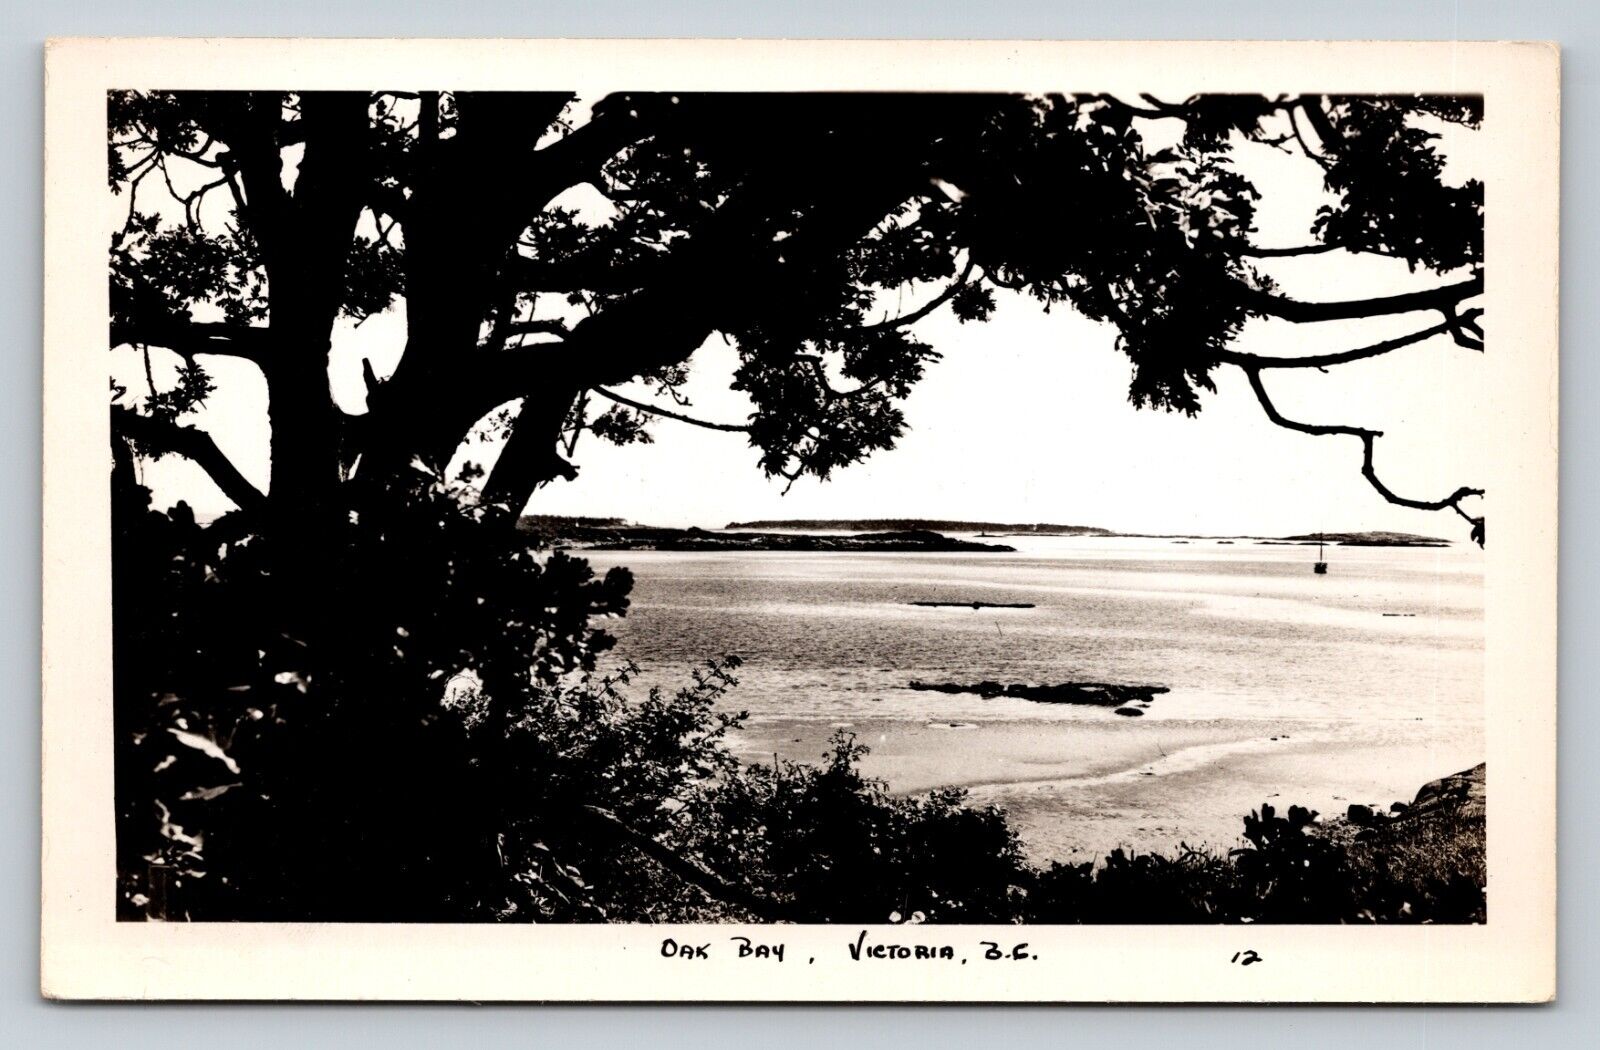 c1948 RPPC Oak Bay Victoria, B.C., Canada Scenic View VINTAGE Postcard